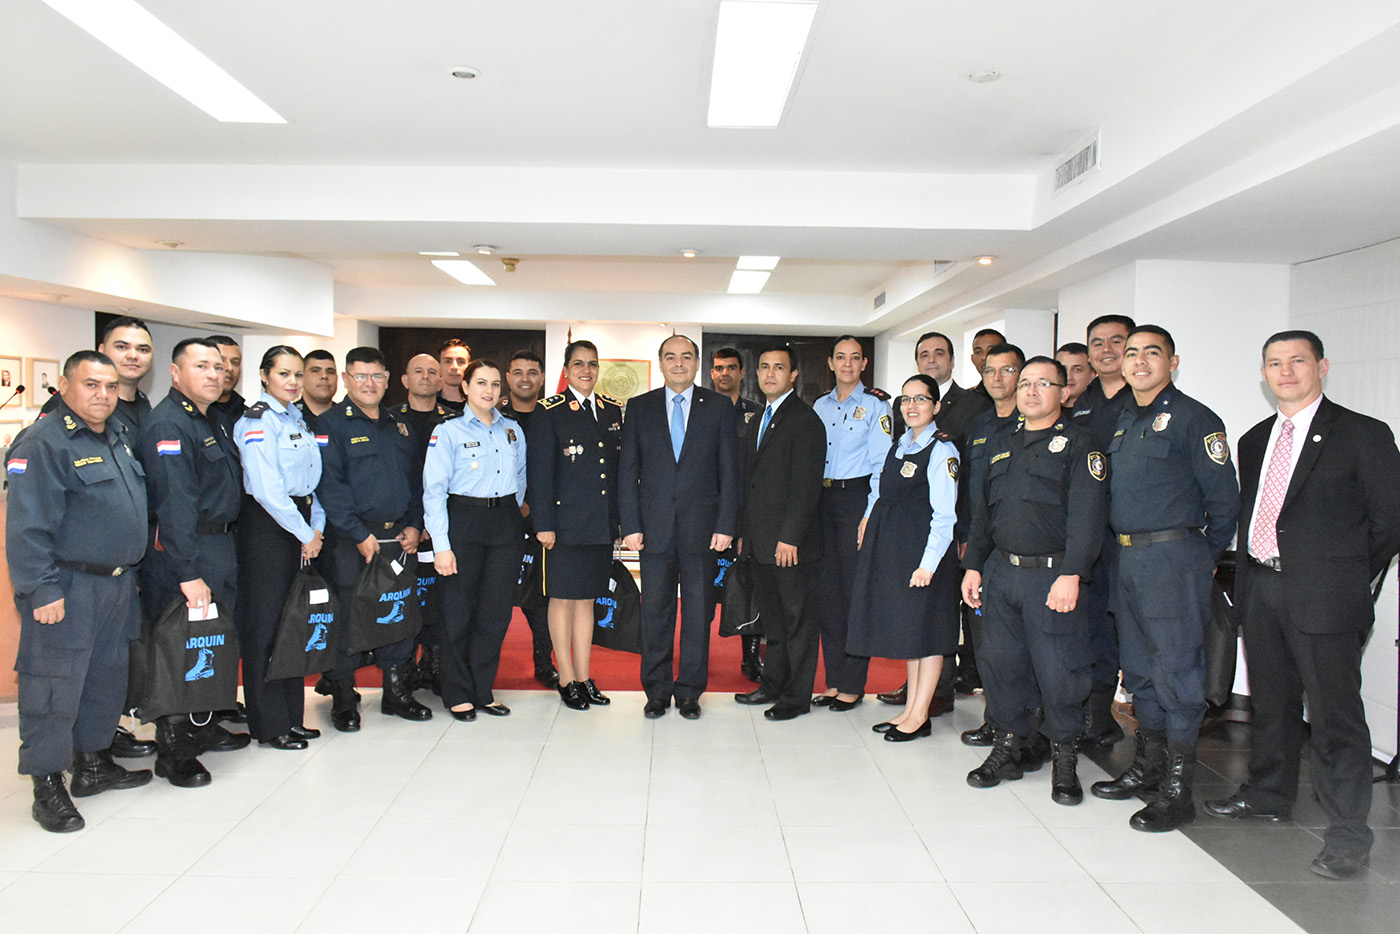 Canciller saludó y felicitó a la Policía Nacional en la persona de la jefa de seguridad de Relaciones Exteriores